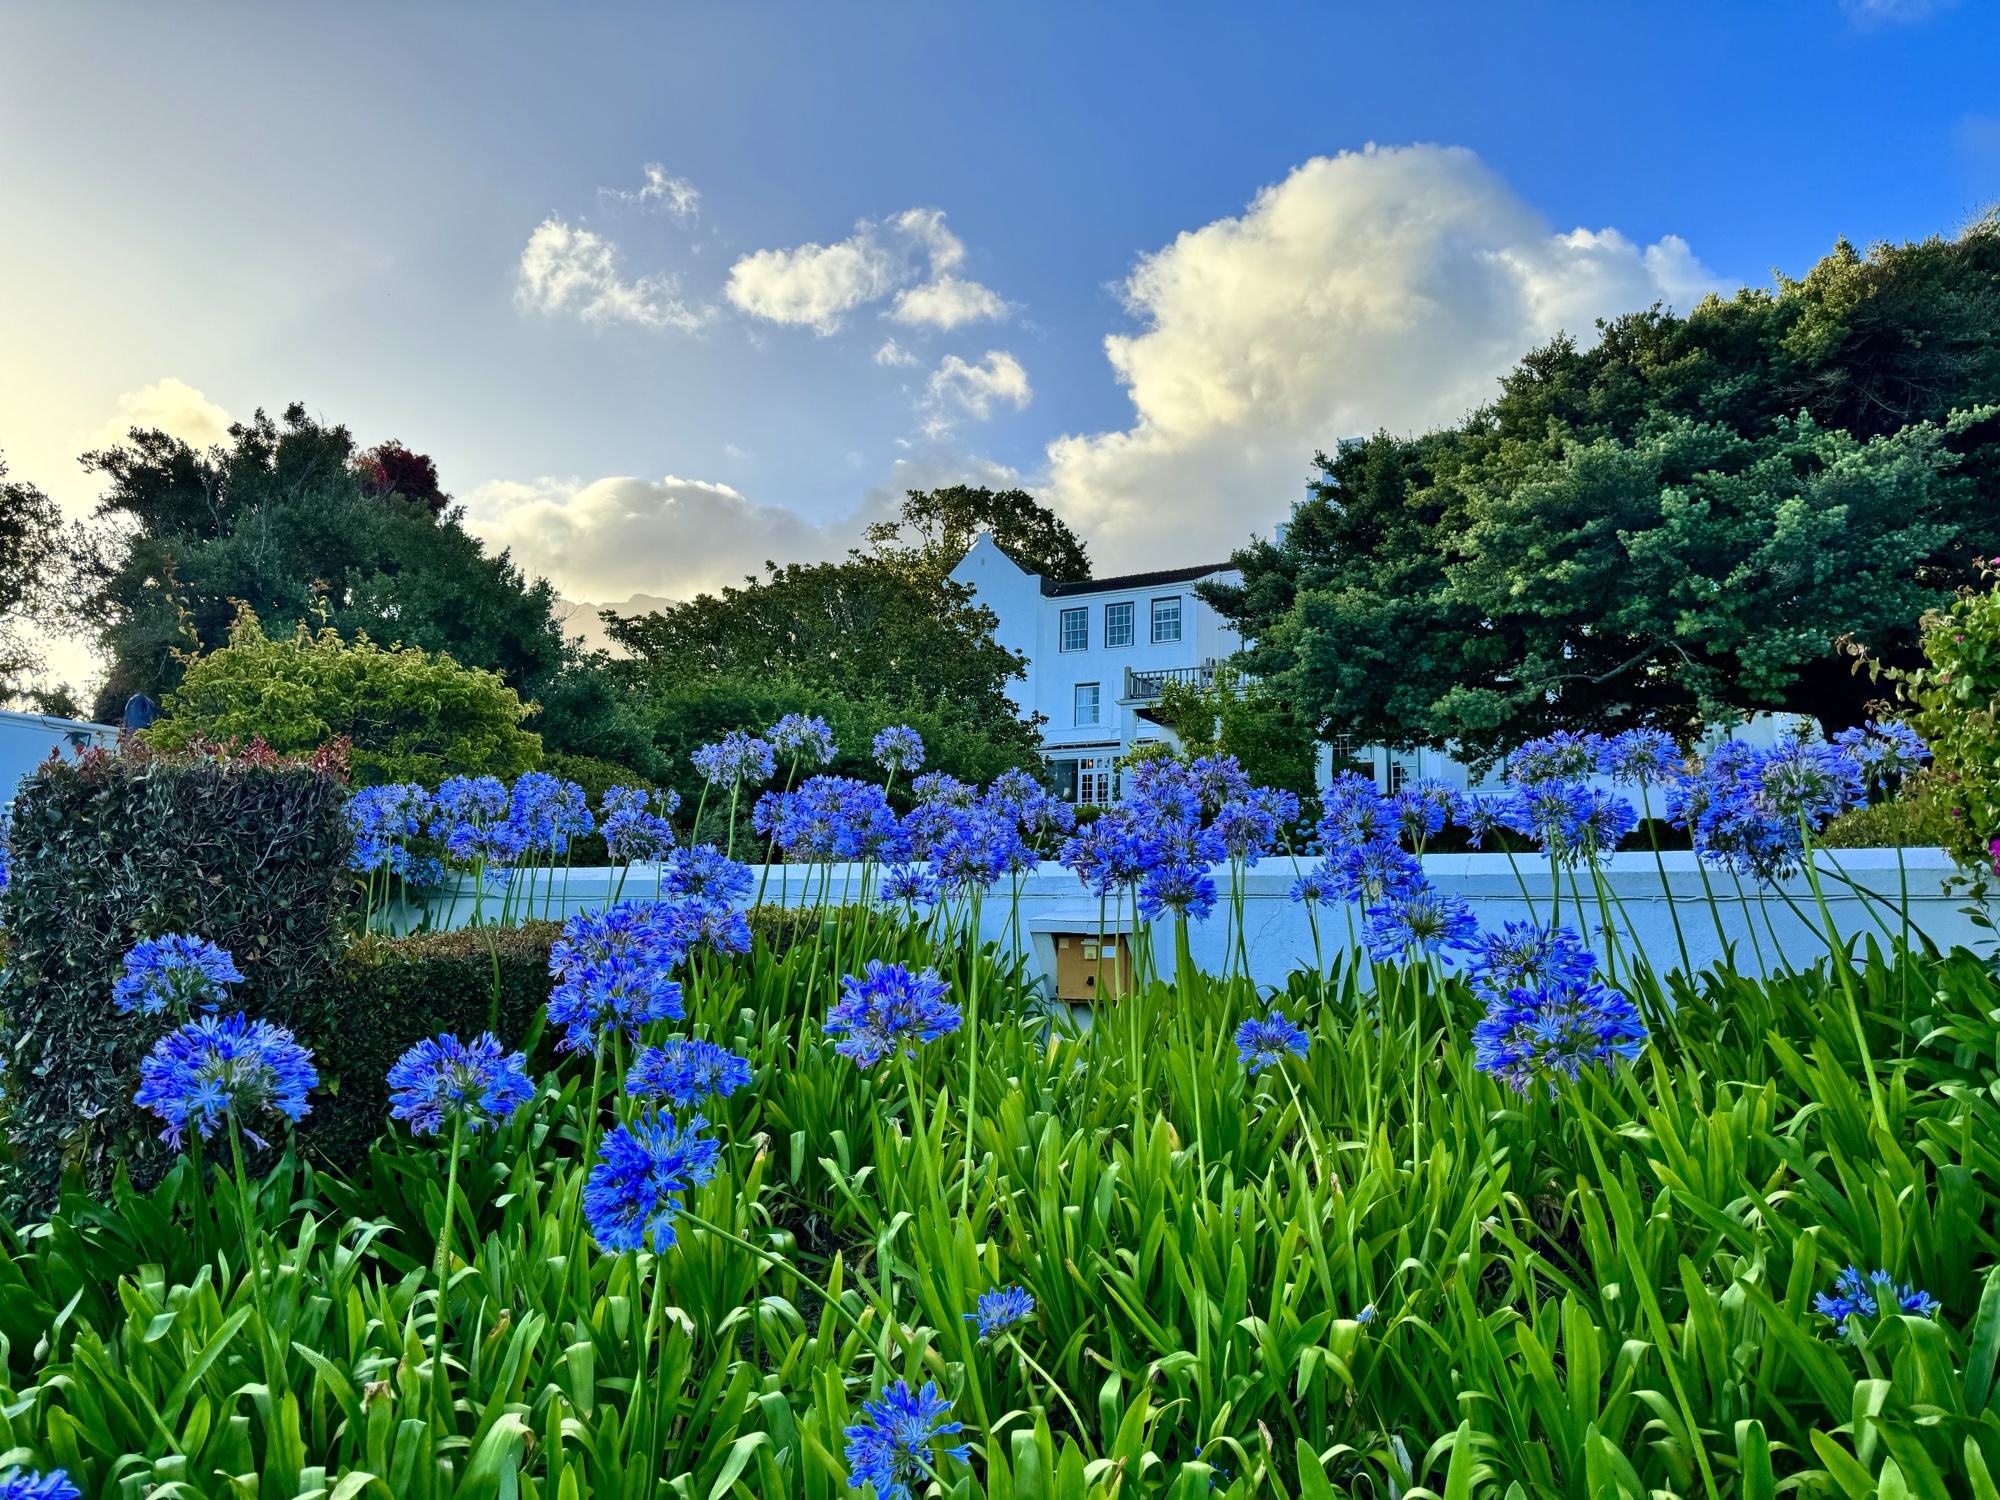 a blue flowers in a garden